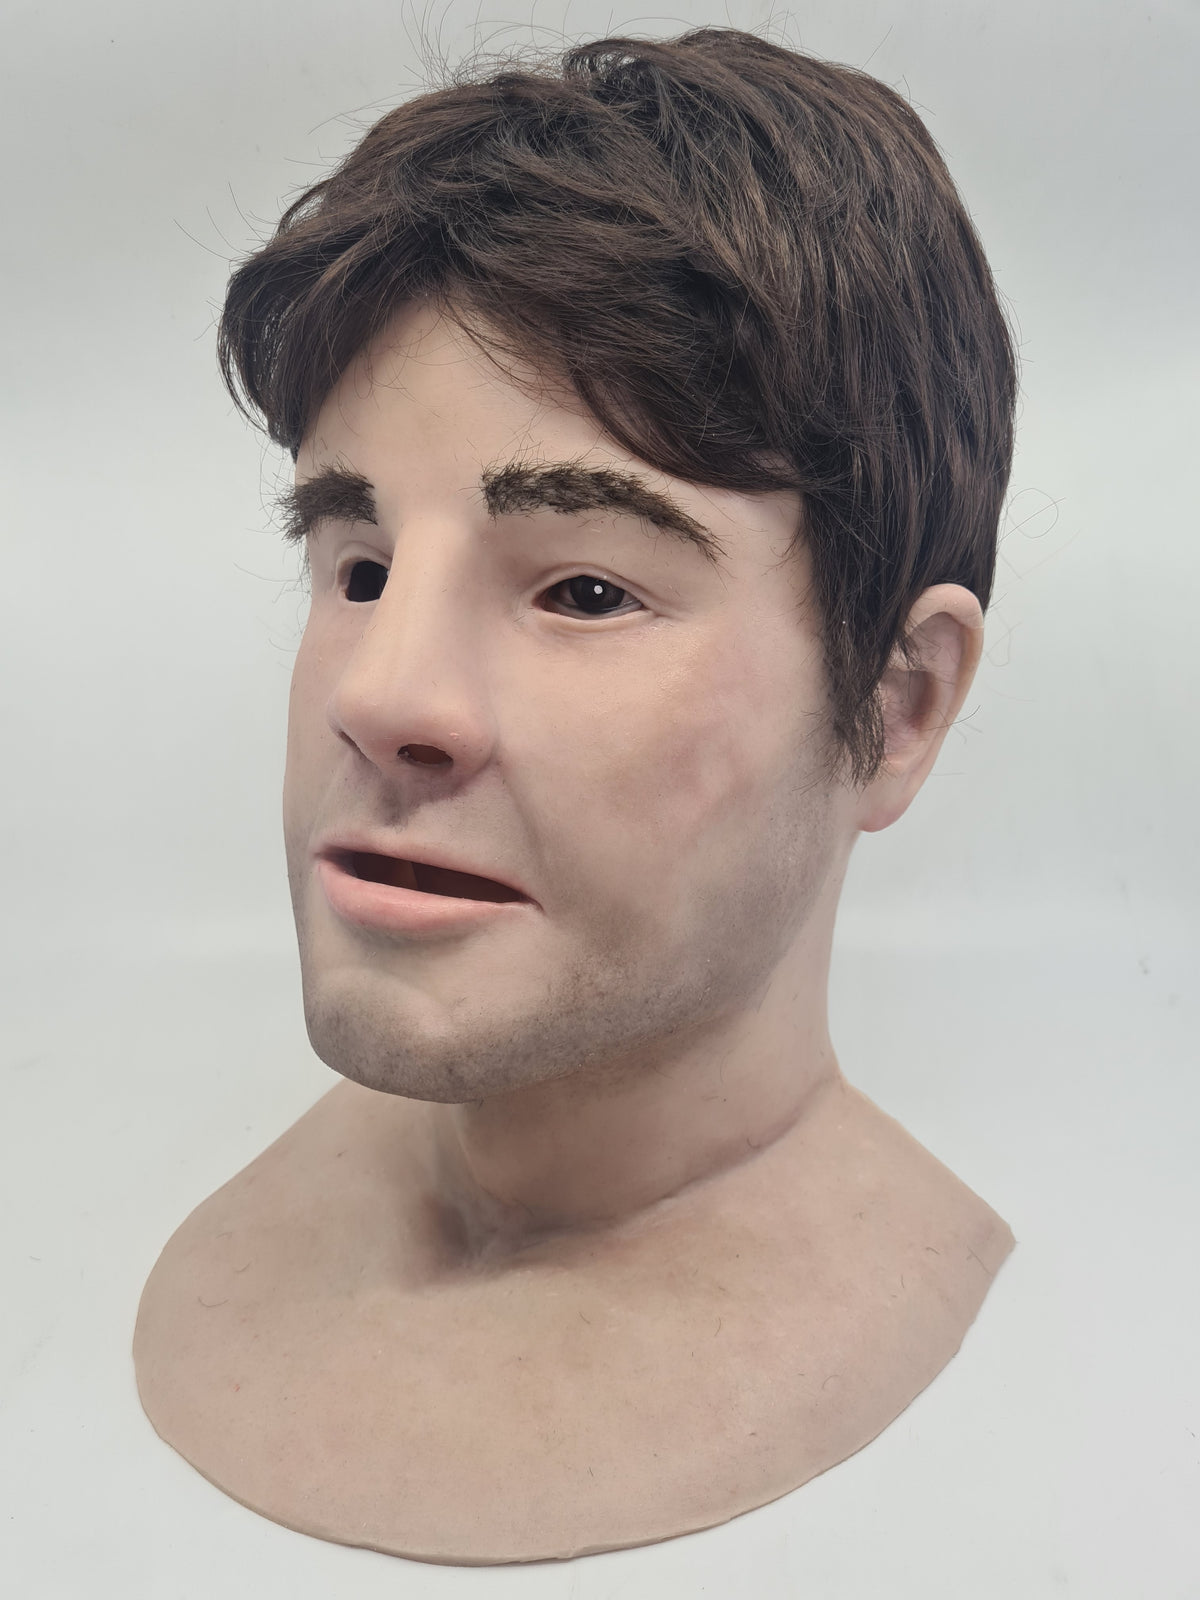 Thomas - SimMan Facial Overlay